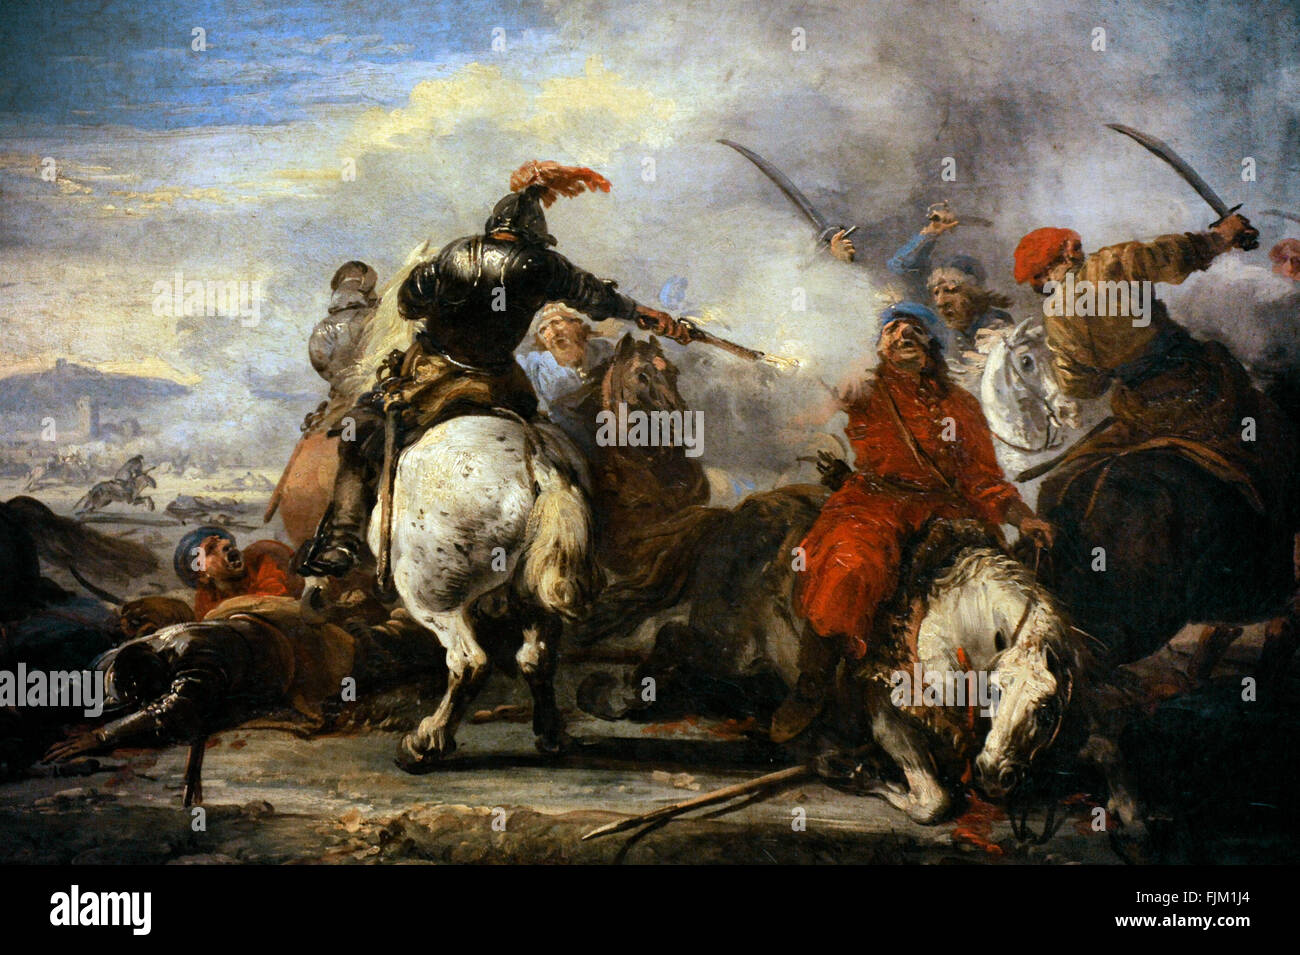 Jacques Courtois dit Il Borgognone (1621-1675). Le peintre français. Rencontre de cavalerie, deuxième moitié du 17ème siècle. Le Musée de l'Ermitage. Saint Petersburg. La Russie. Banque D'Images